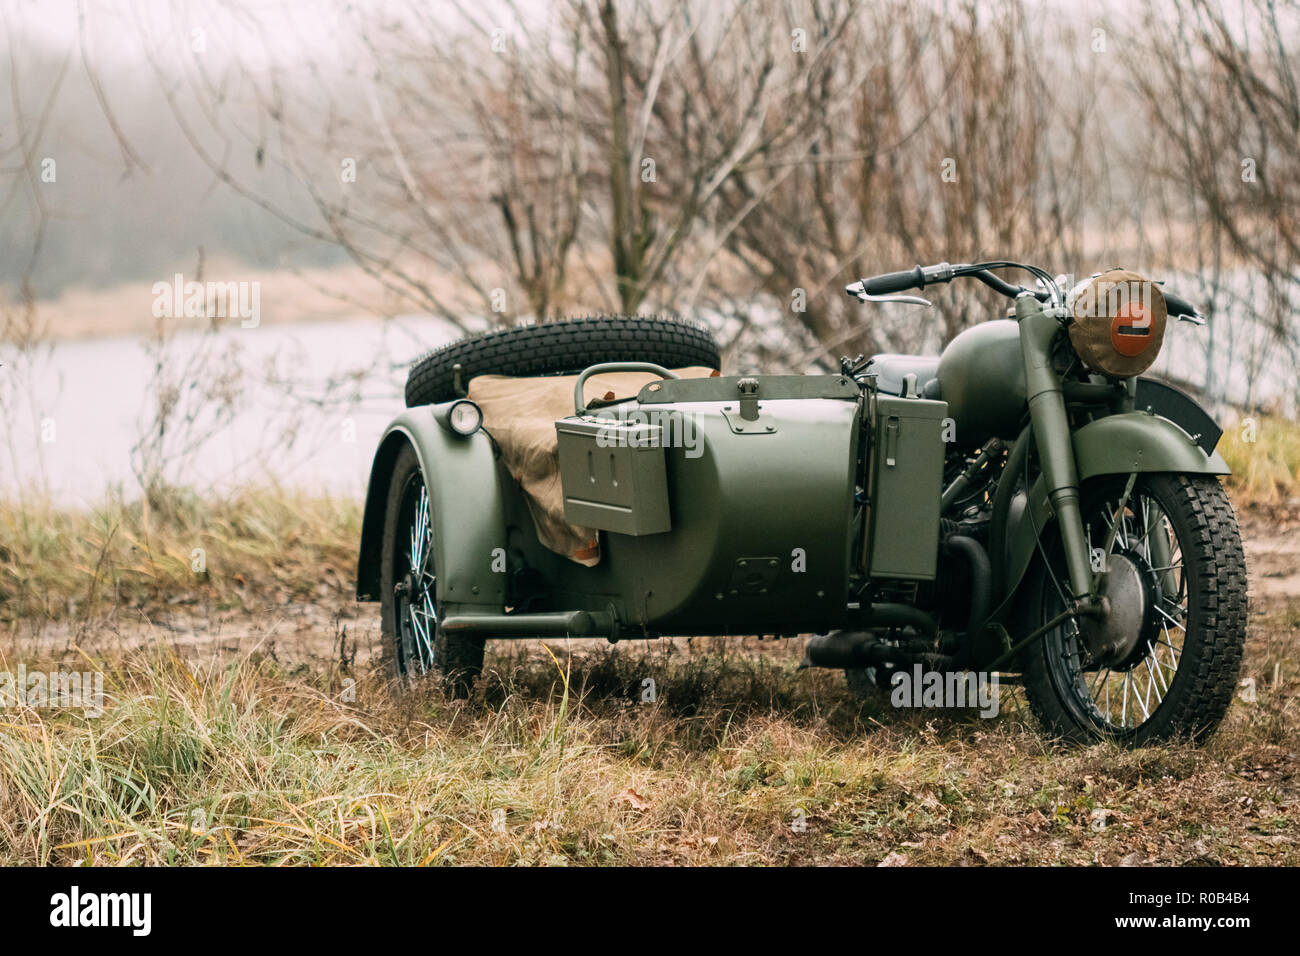 Moto militaire soviétique de l'Armée rouge pendant la Seconde Guerre  mondiale Photo Stock - Alamy